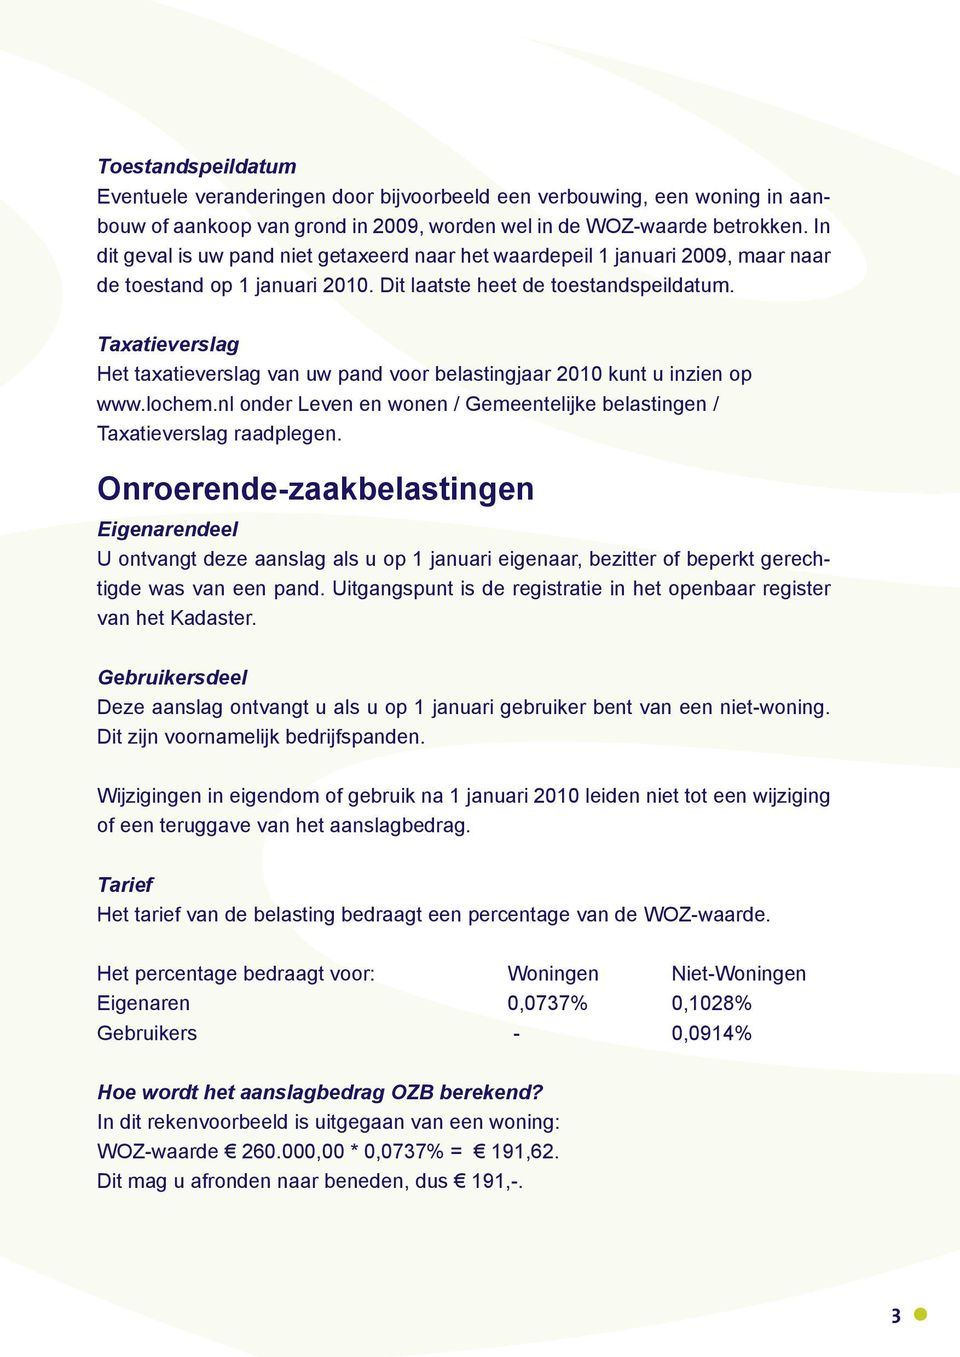 Taxatieverslag Het taxatieverslag van uw pand voor belastingjaar 2010 kunt u inzien op www.lochem.nl onder Leven en wonen / Gemeentelijke belastingen / Taxatieverslag raadplegen.